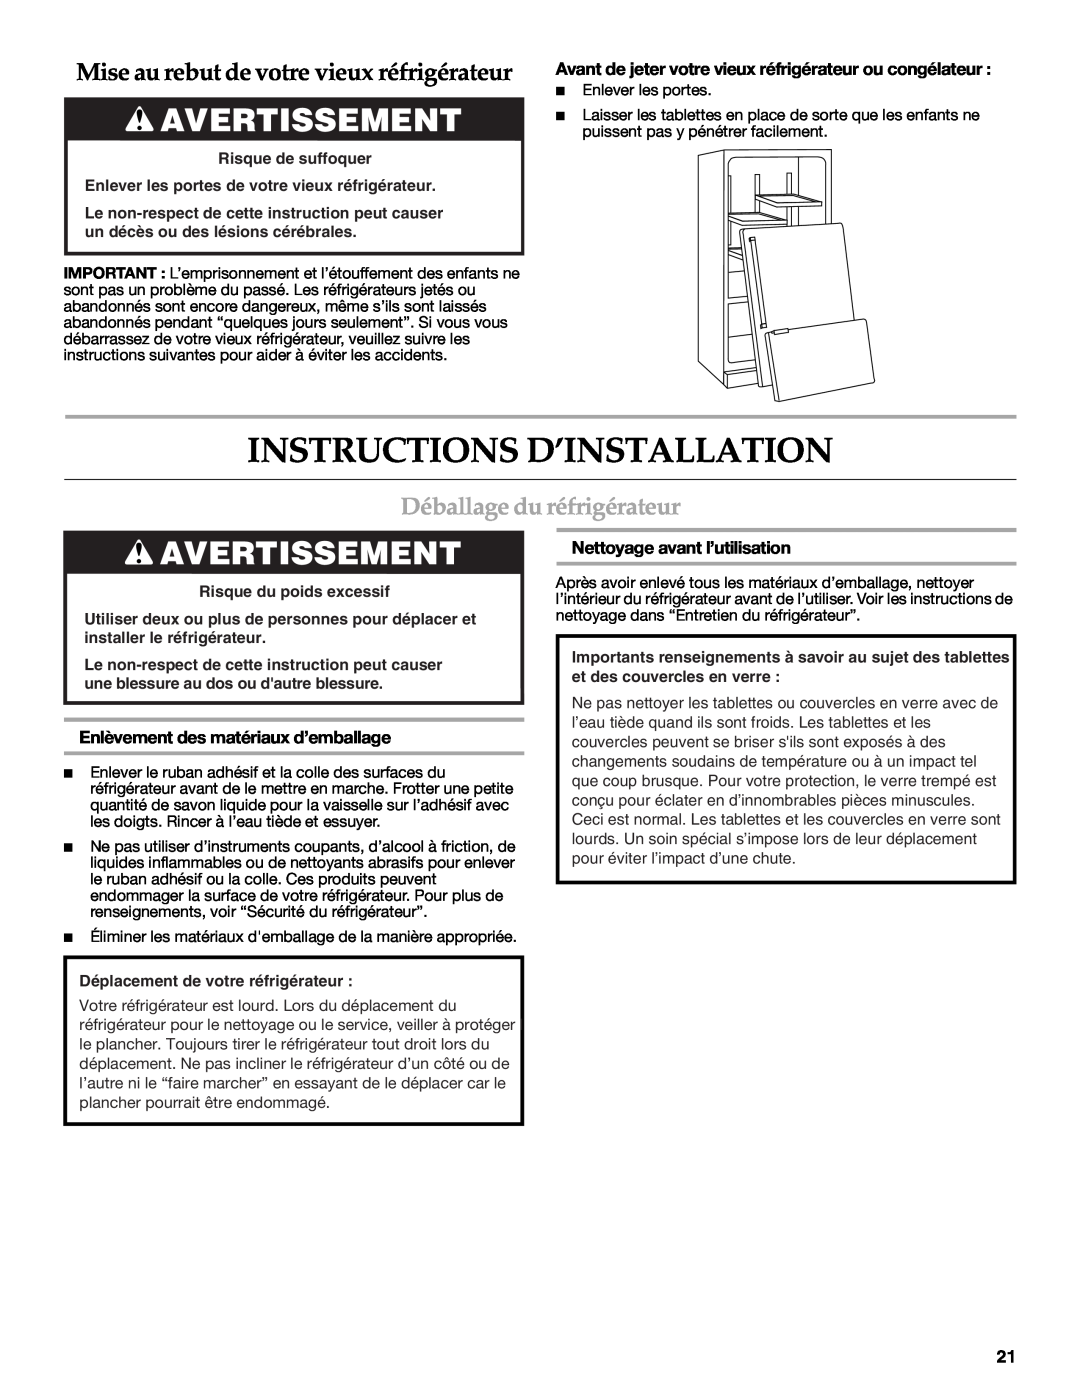 KitchenAid W10137649A Instructions D’Installation, Avertissement, Mise au rebut de votre vieux réfrigérateur 